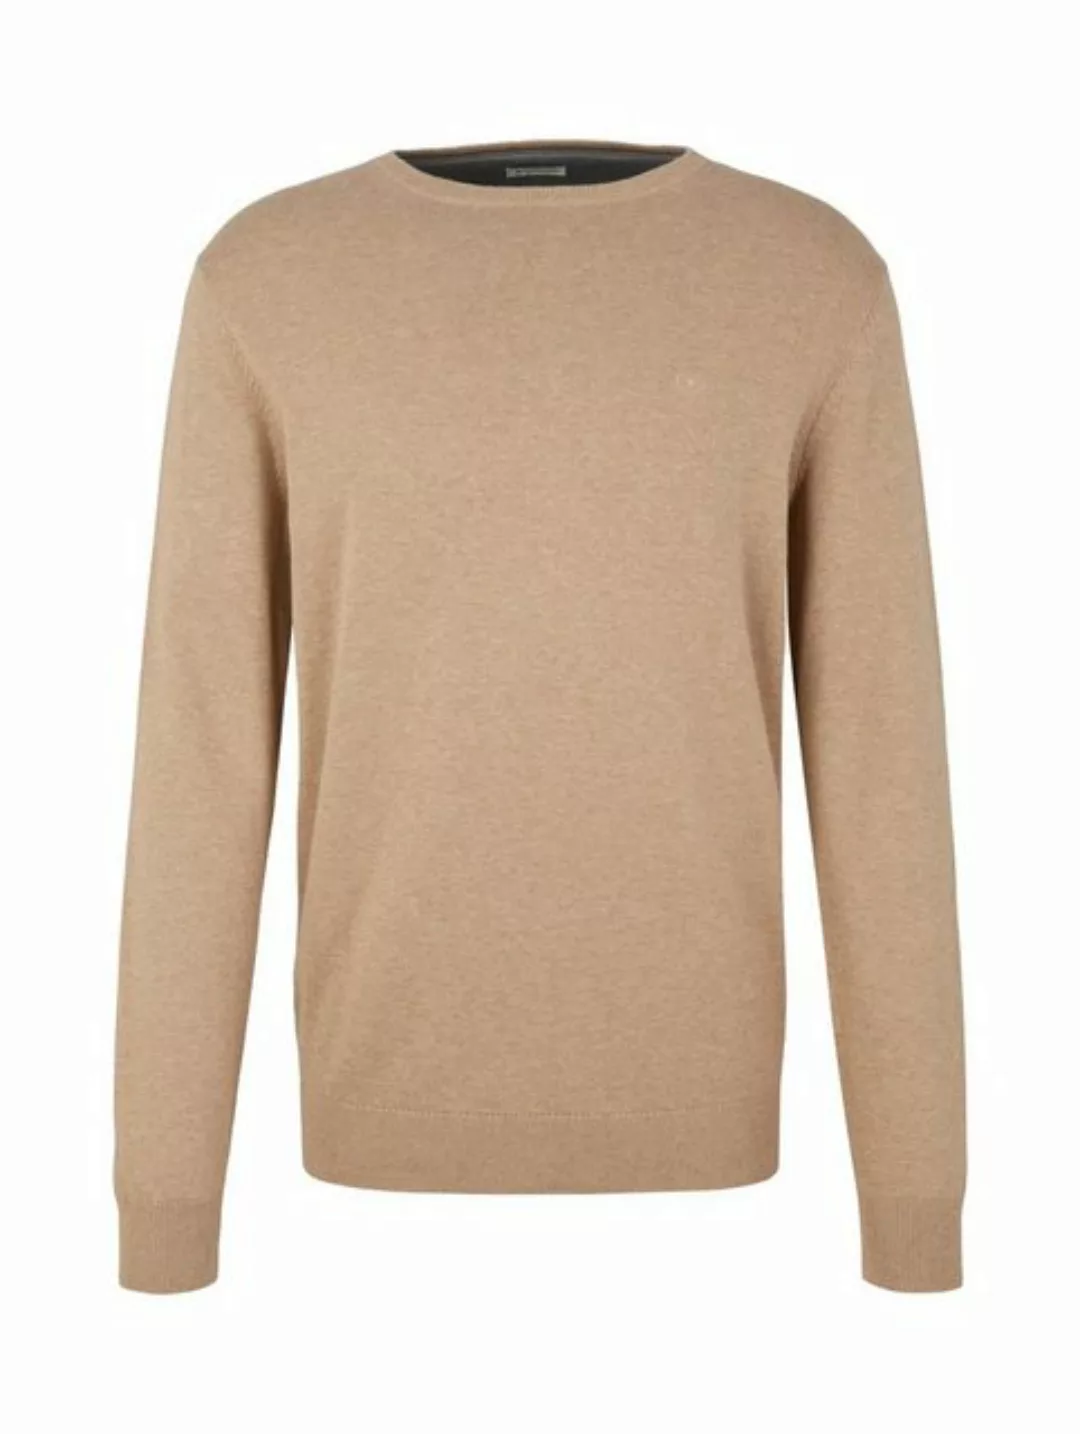 TOM TAILOR Strickpullover Feinstrick Basic Pullover Rundhals Sweater 4651 i günstig online kaufen